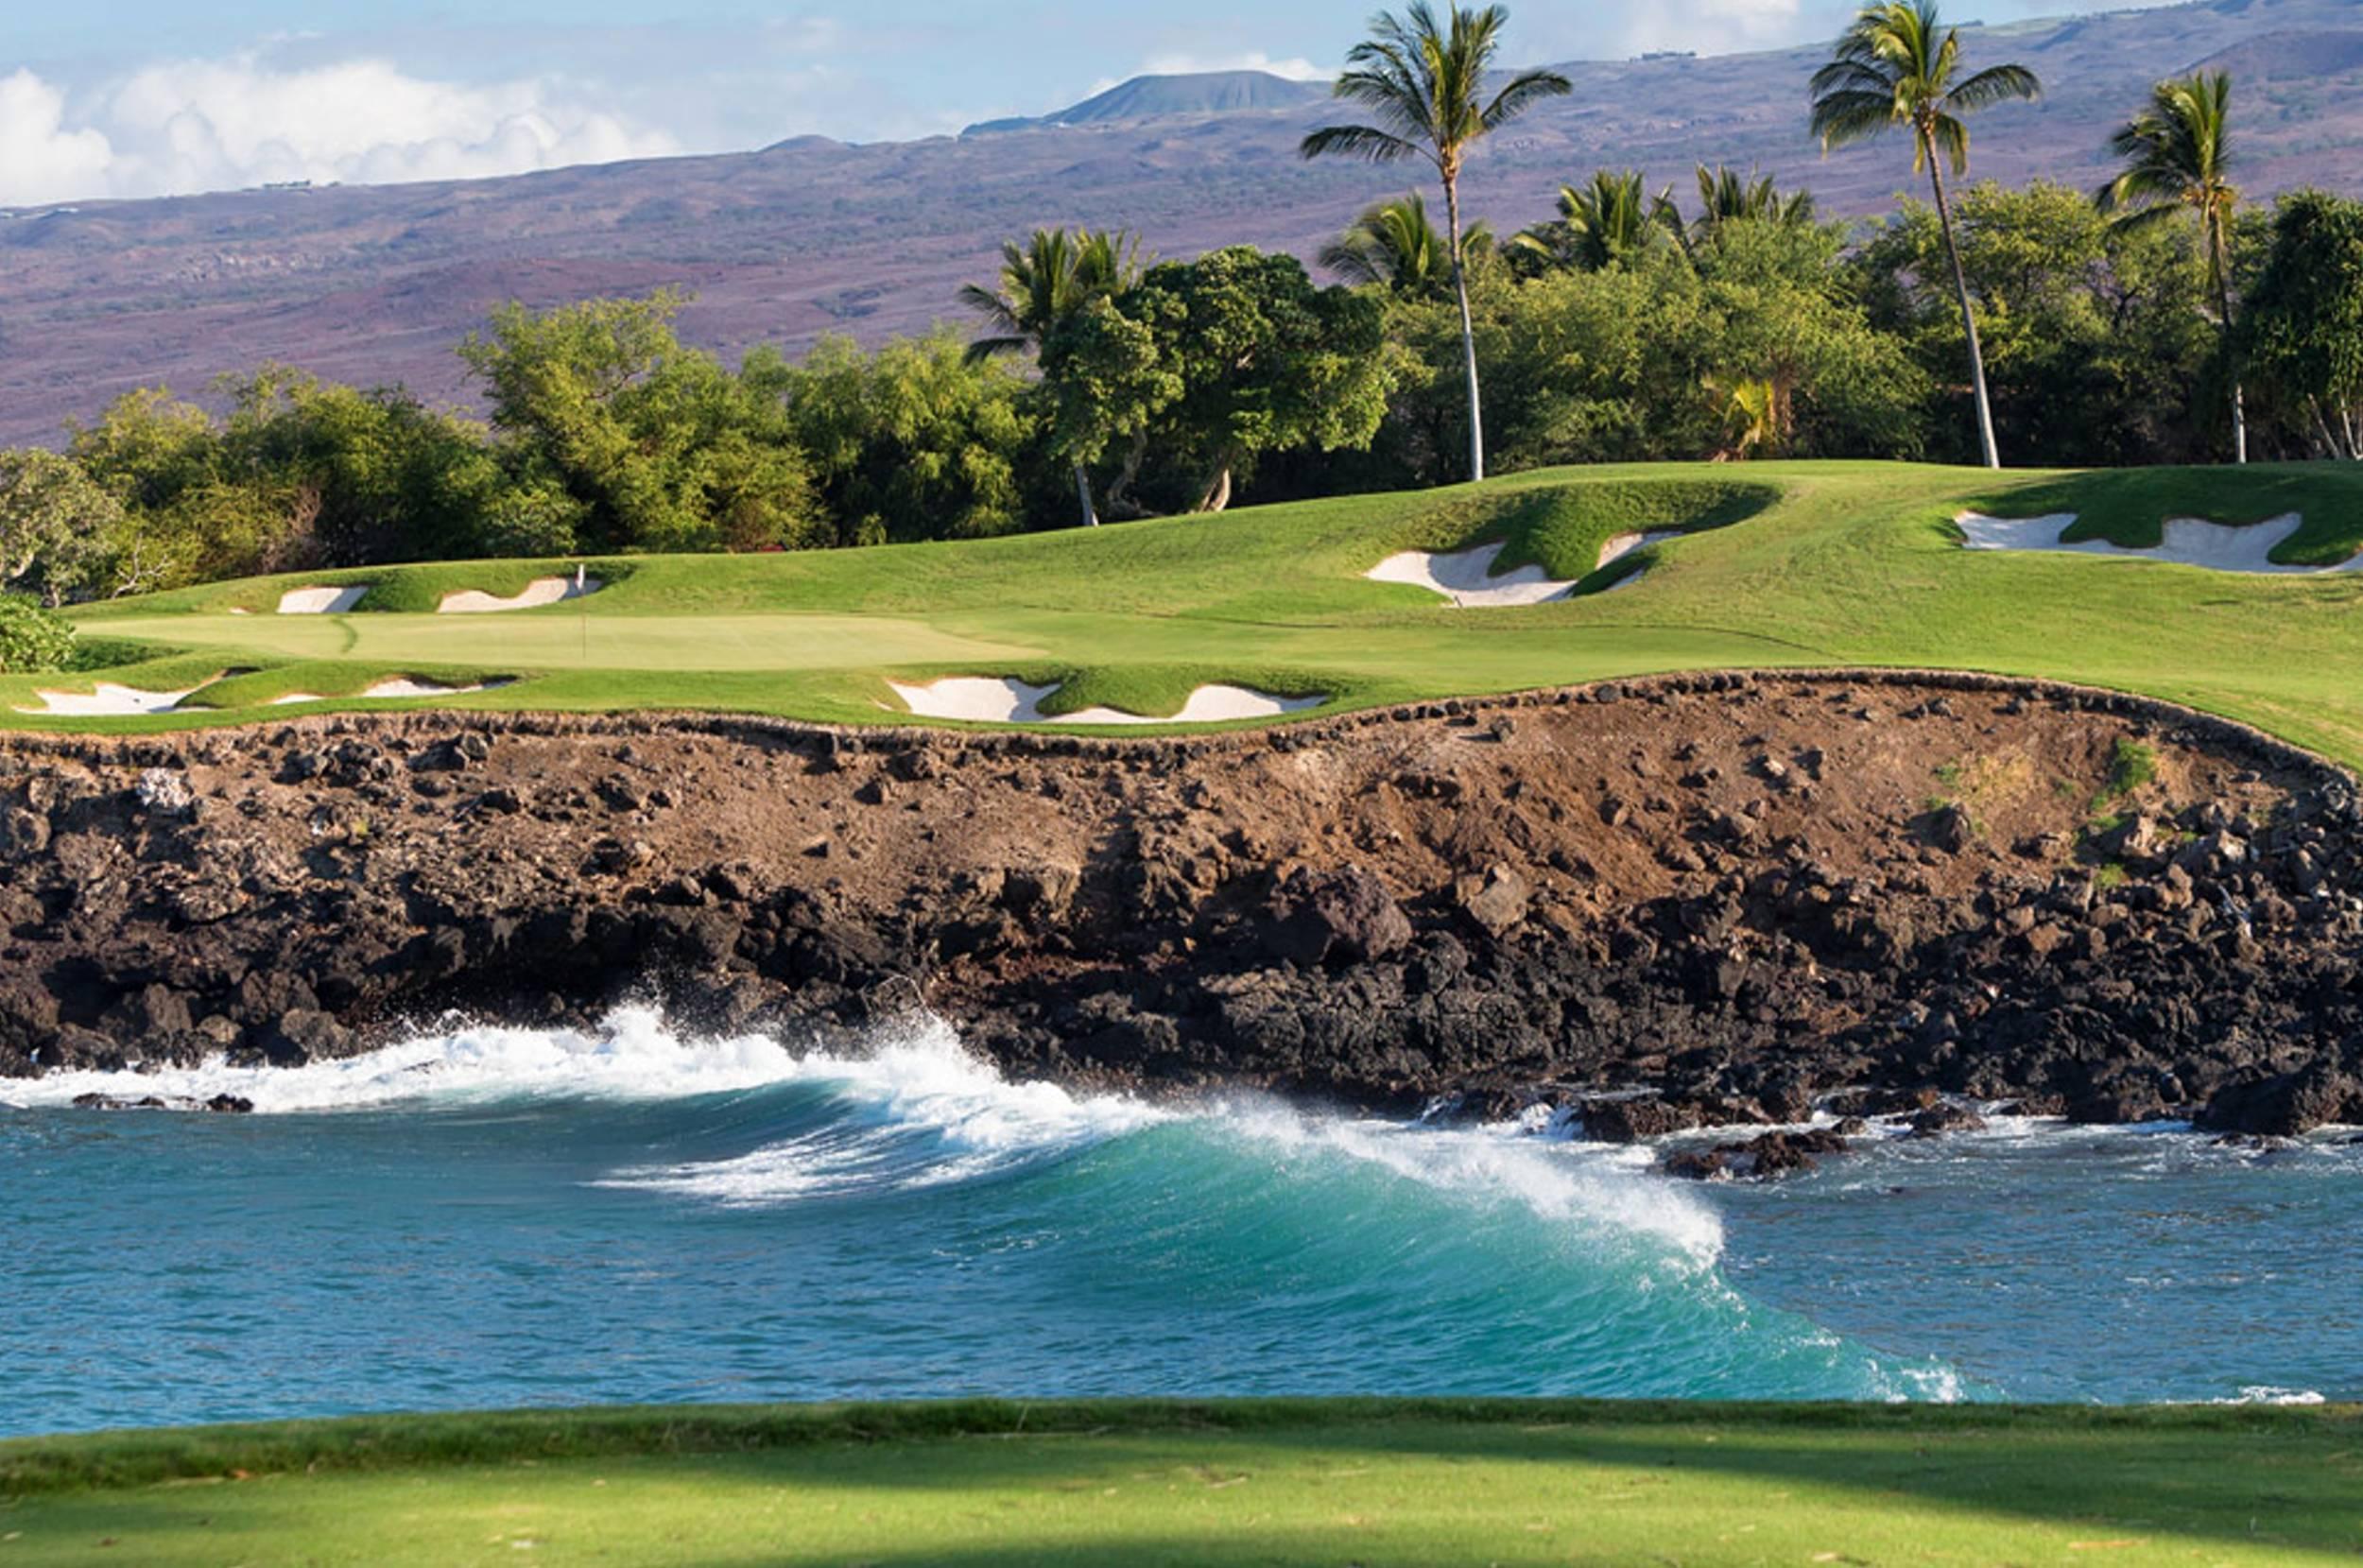 Hawaii Beach Golf Course HD desktop wallpaper, Widescreen, High